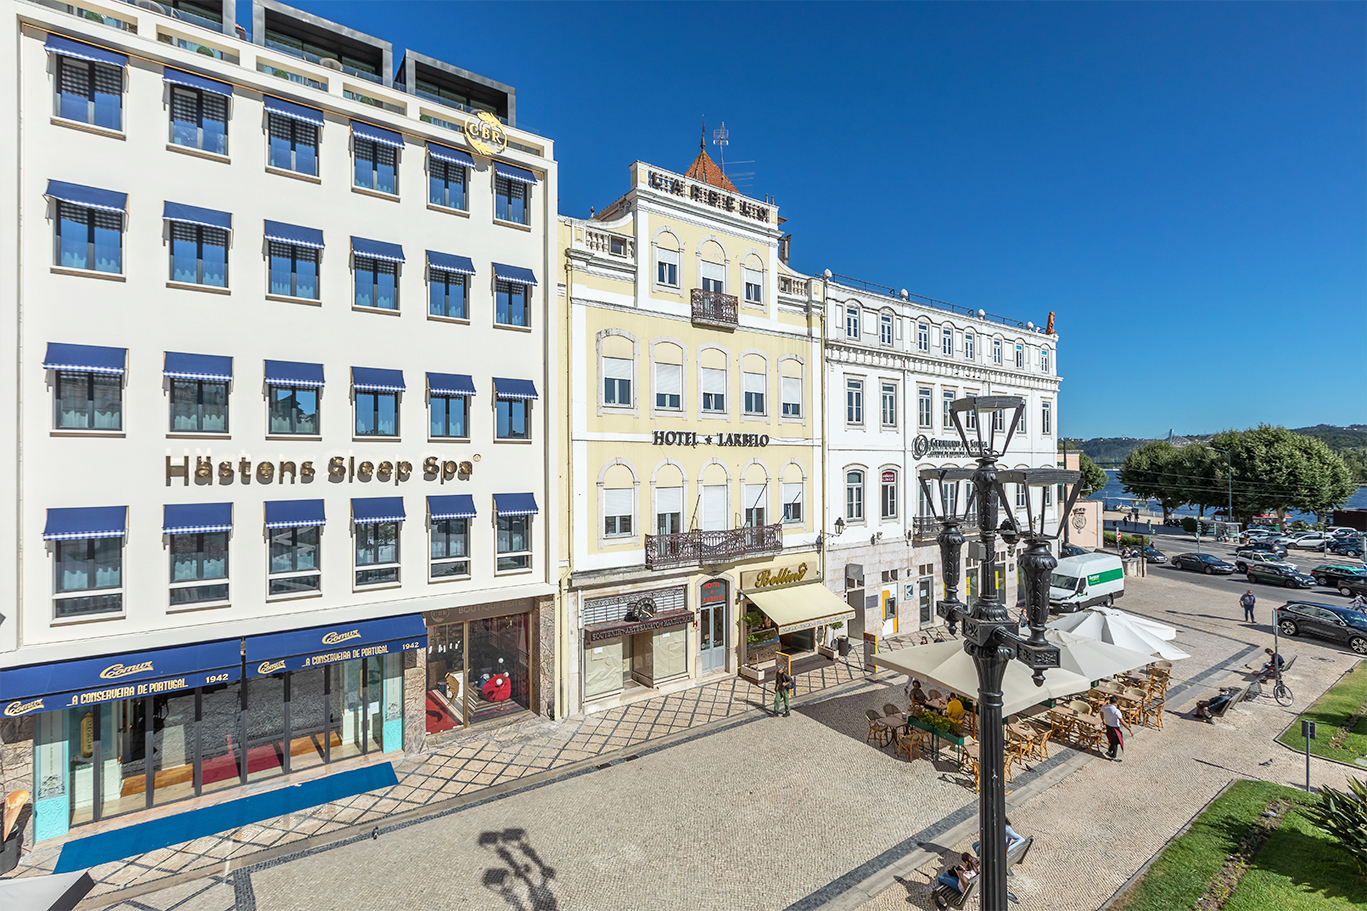 La fachada del hotel en el centro de Coimbra.